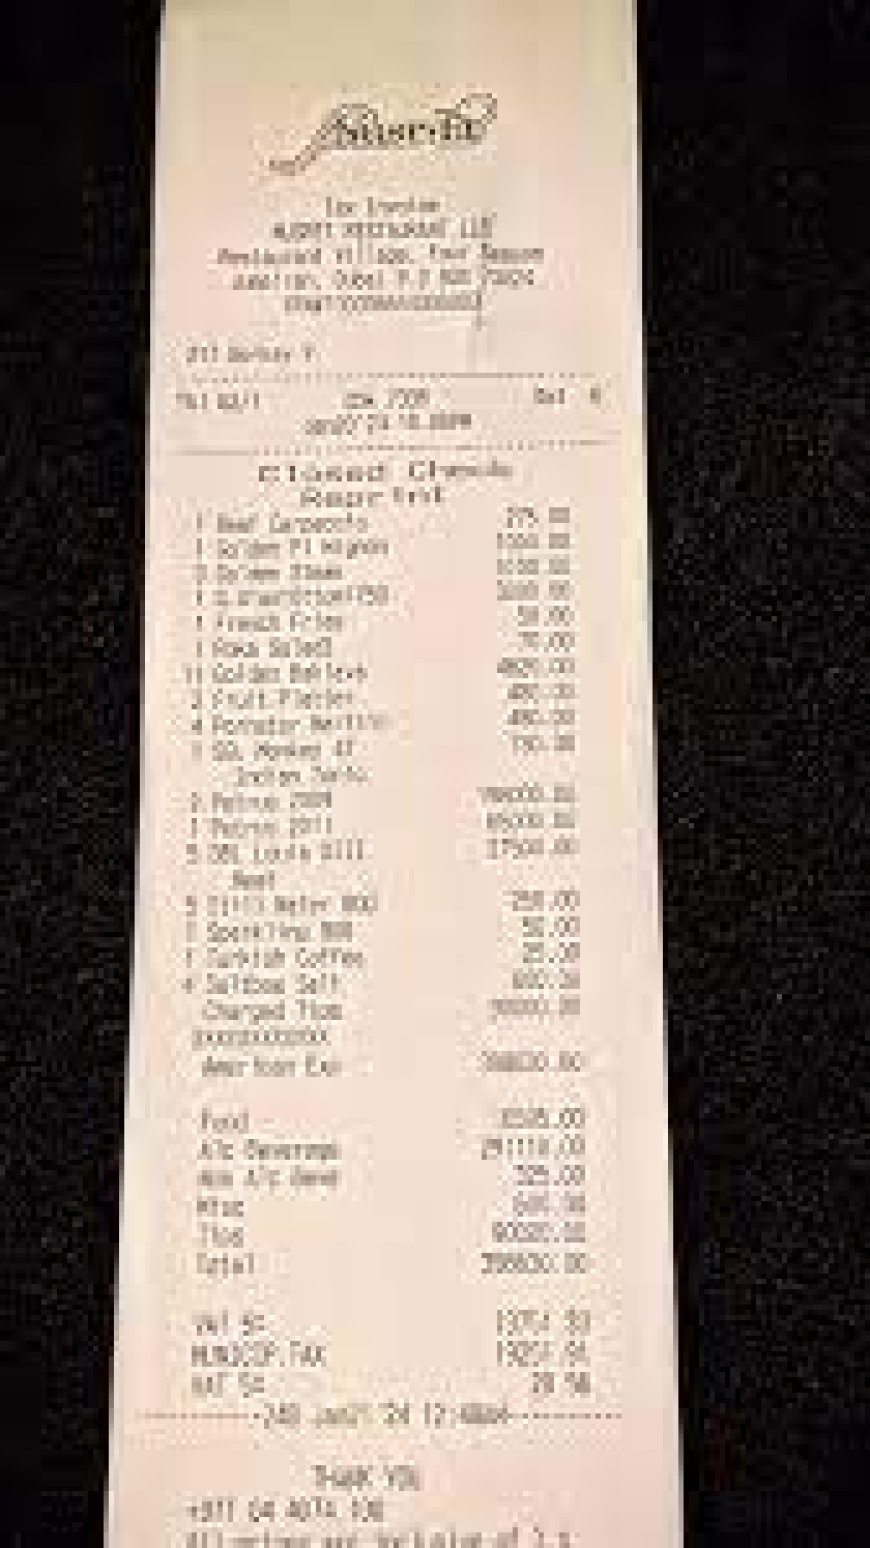 Diners pay over ₹20 lakh in tips at Salt Bae's Dubai restaurant, netizens baffled